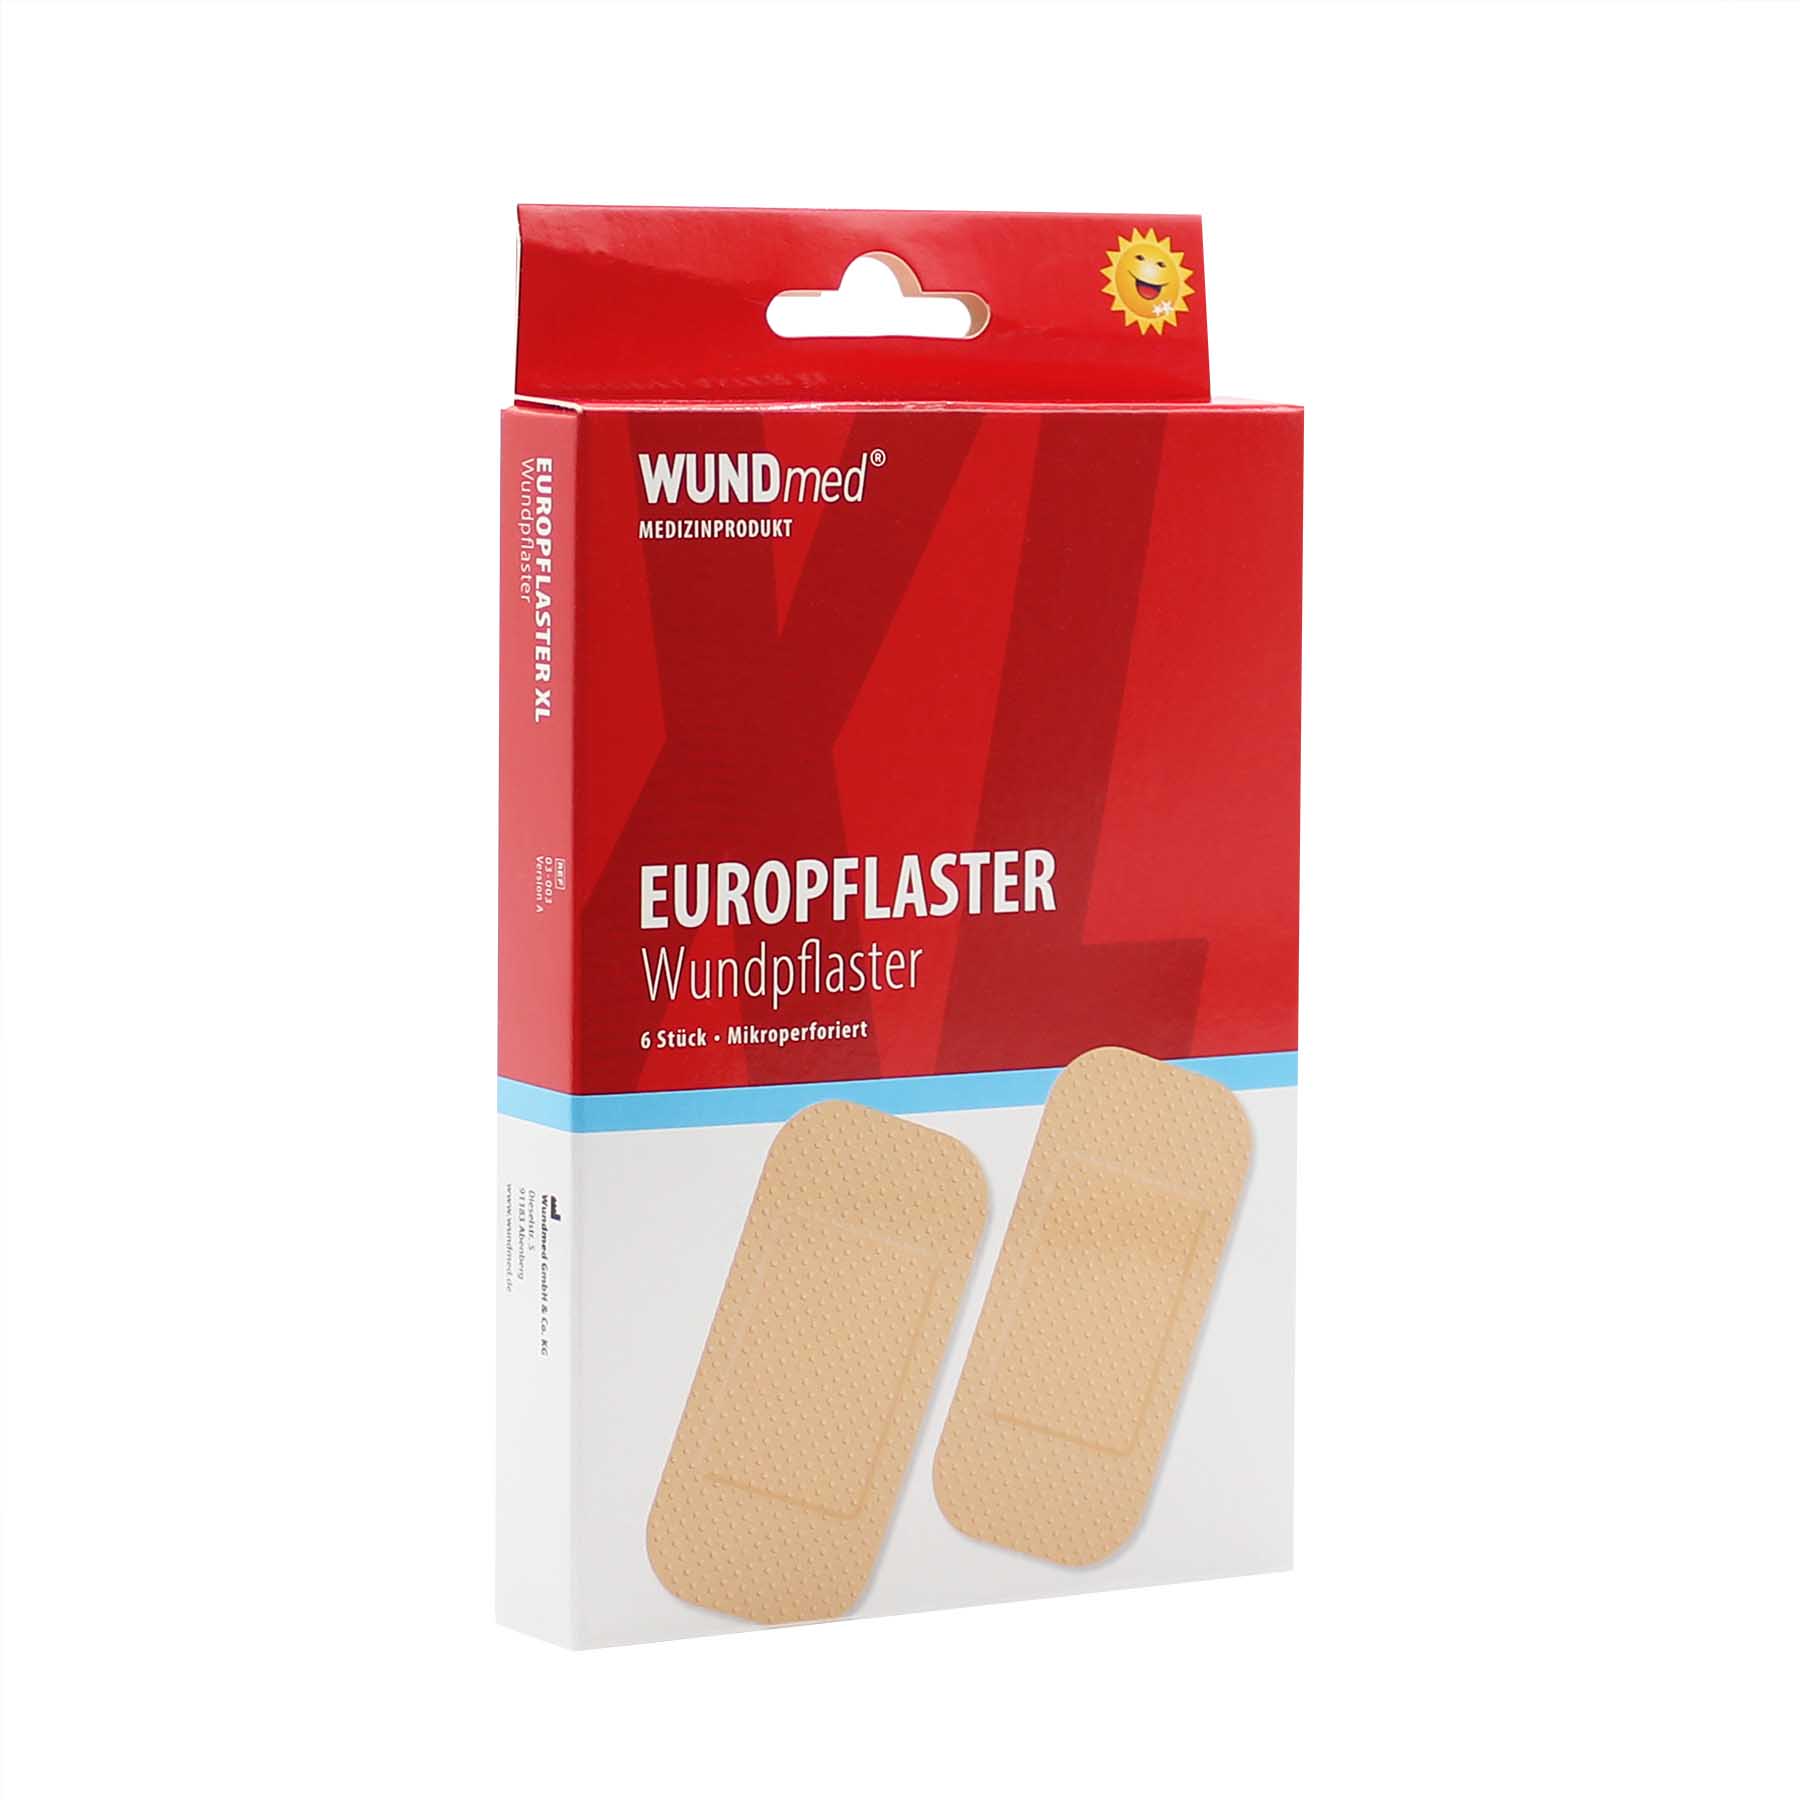 WUNDmed® Euro-Pflaster wasserabweisend 50 x 100 mm 6 Stück/Packung